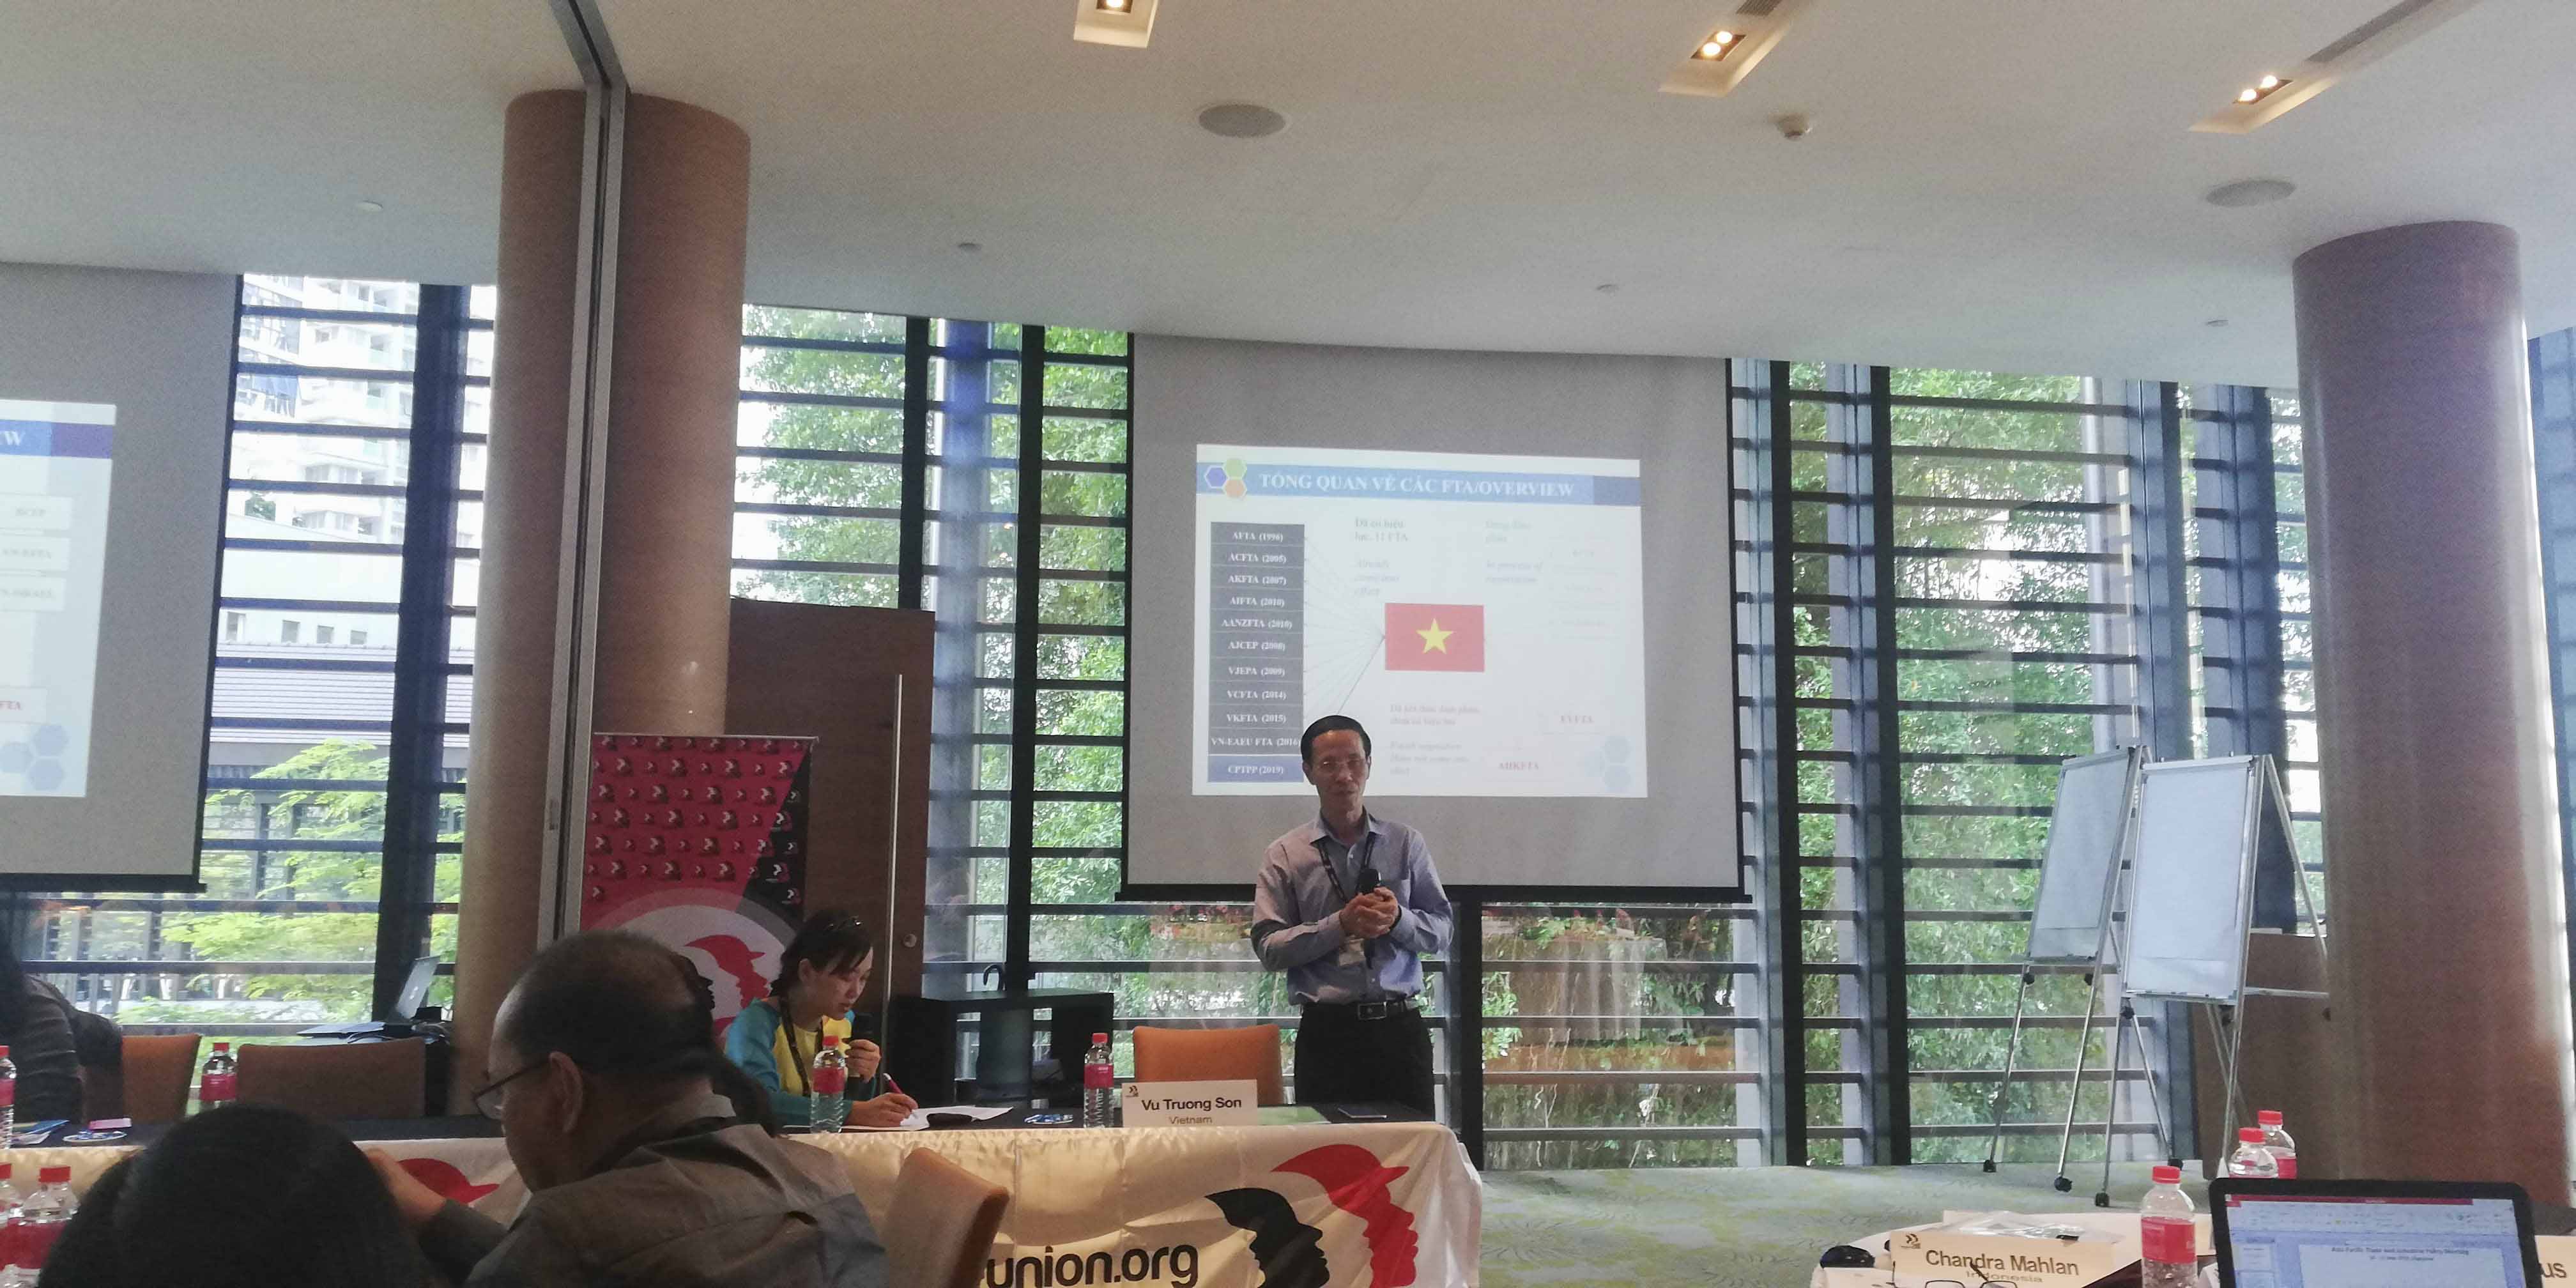 Ông Vũ Trường Sơn - Phó Chủ tịch CĐCTVN phát biểu tại Hội nghị “Thương mại và chính sách ngành” khu vực Châu Á - Thái Bình Dương